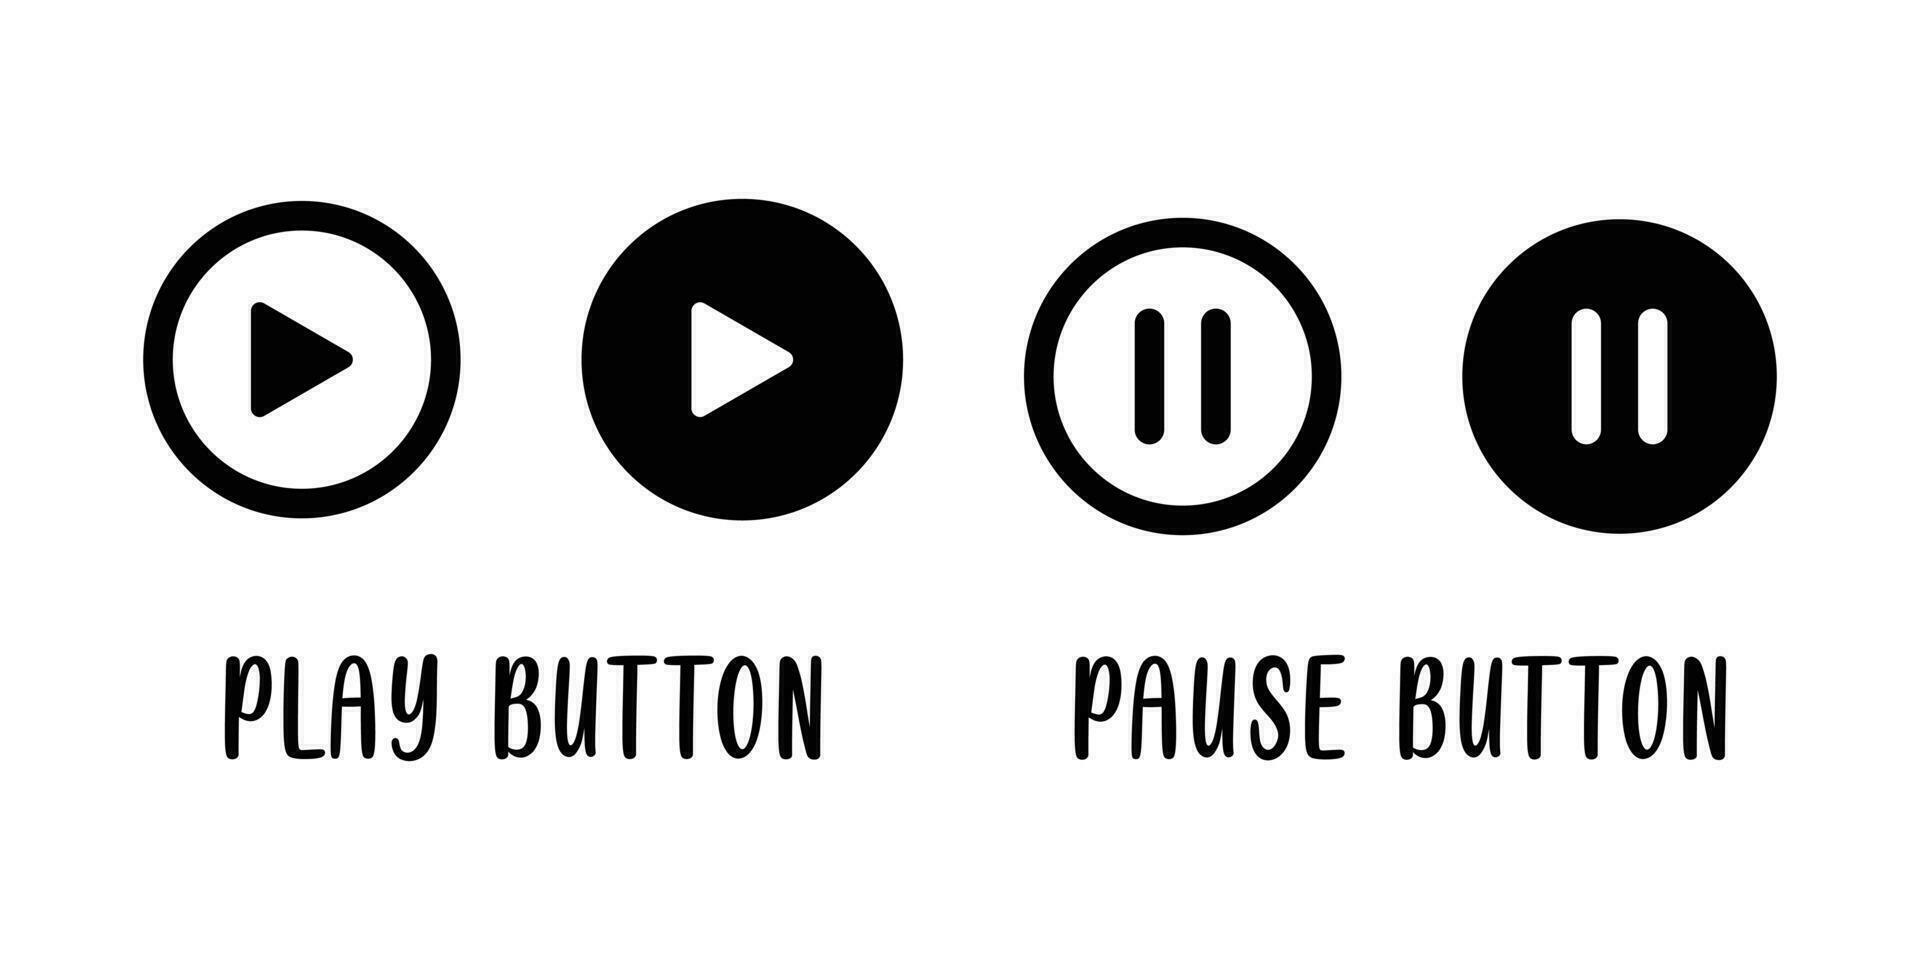 jouer, pause, suivant, précédent et Arrêtez bouton ensemble, multimédia joueur icône, la musique éléments conception, médias joueur bouton, jouer retour symbole vecteur illustration